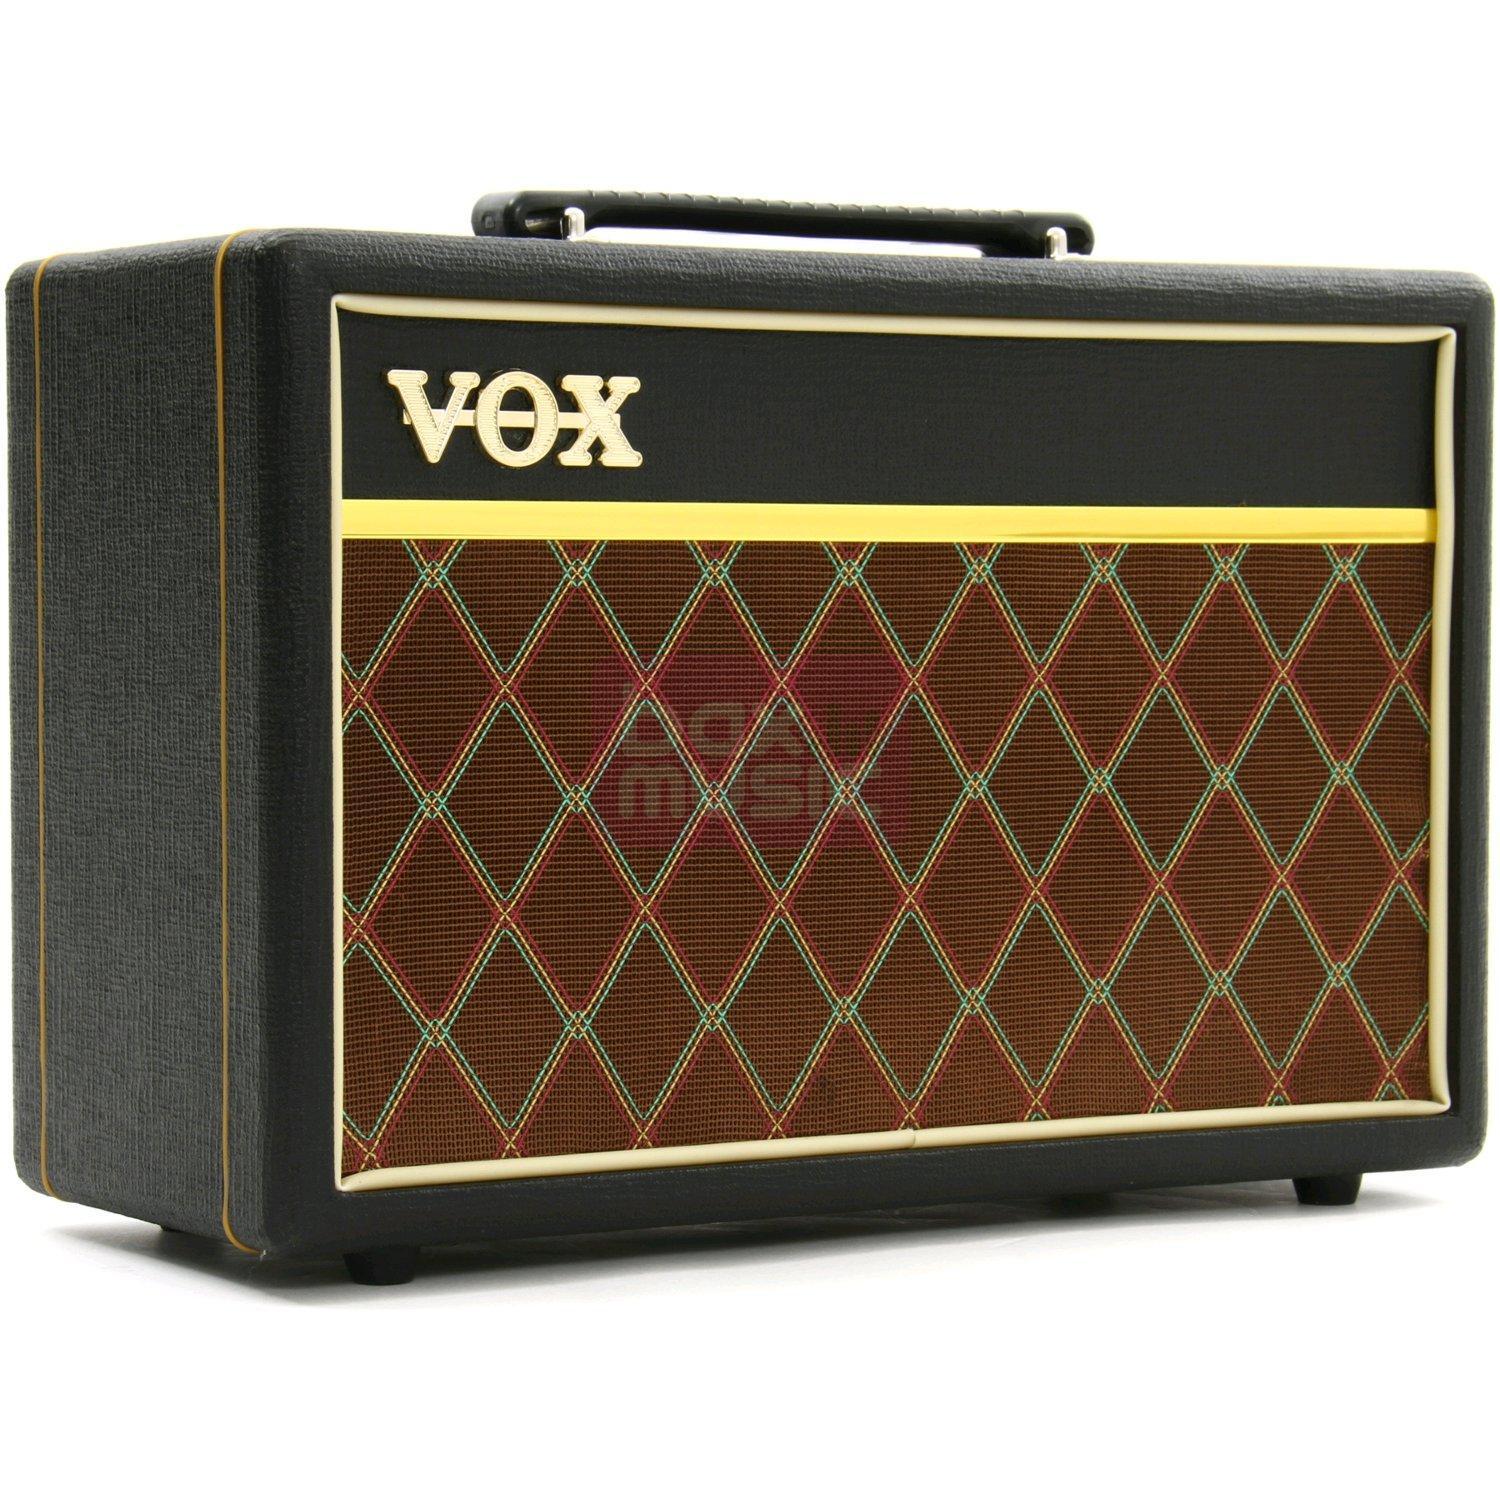 Vox Amplification Pathfinder 10 Elektrische gitaarversterker Zwart, Bruin